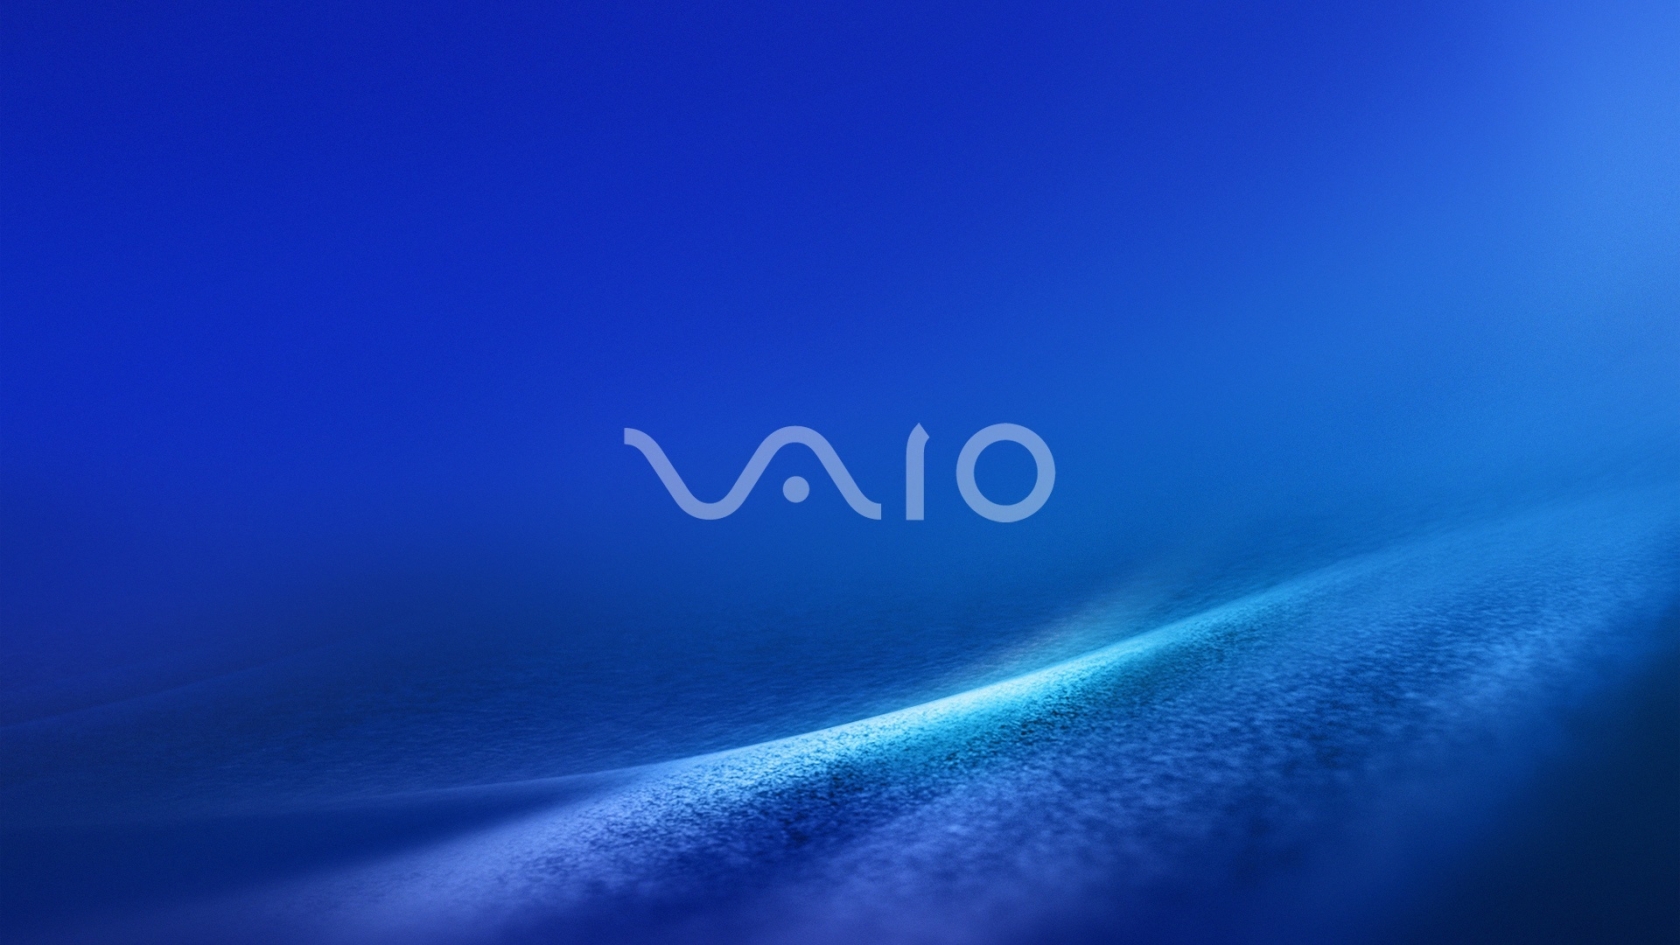 Vaio Dark Blue for 1680 x 945 HDTV resolution